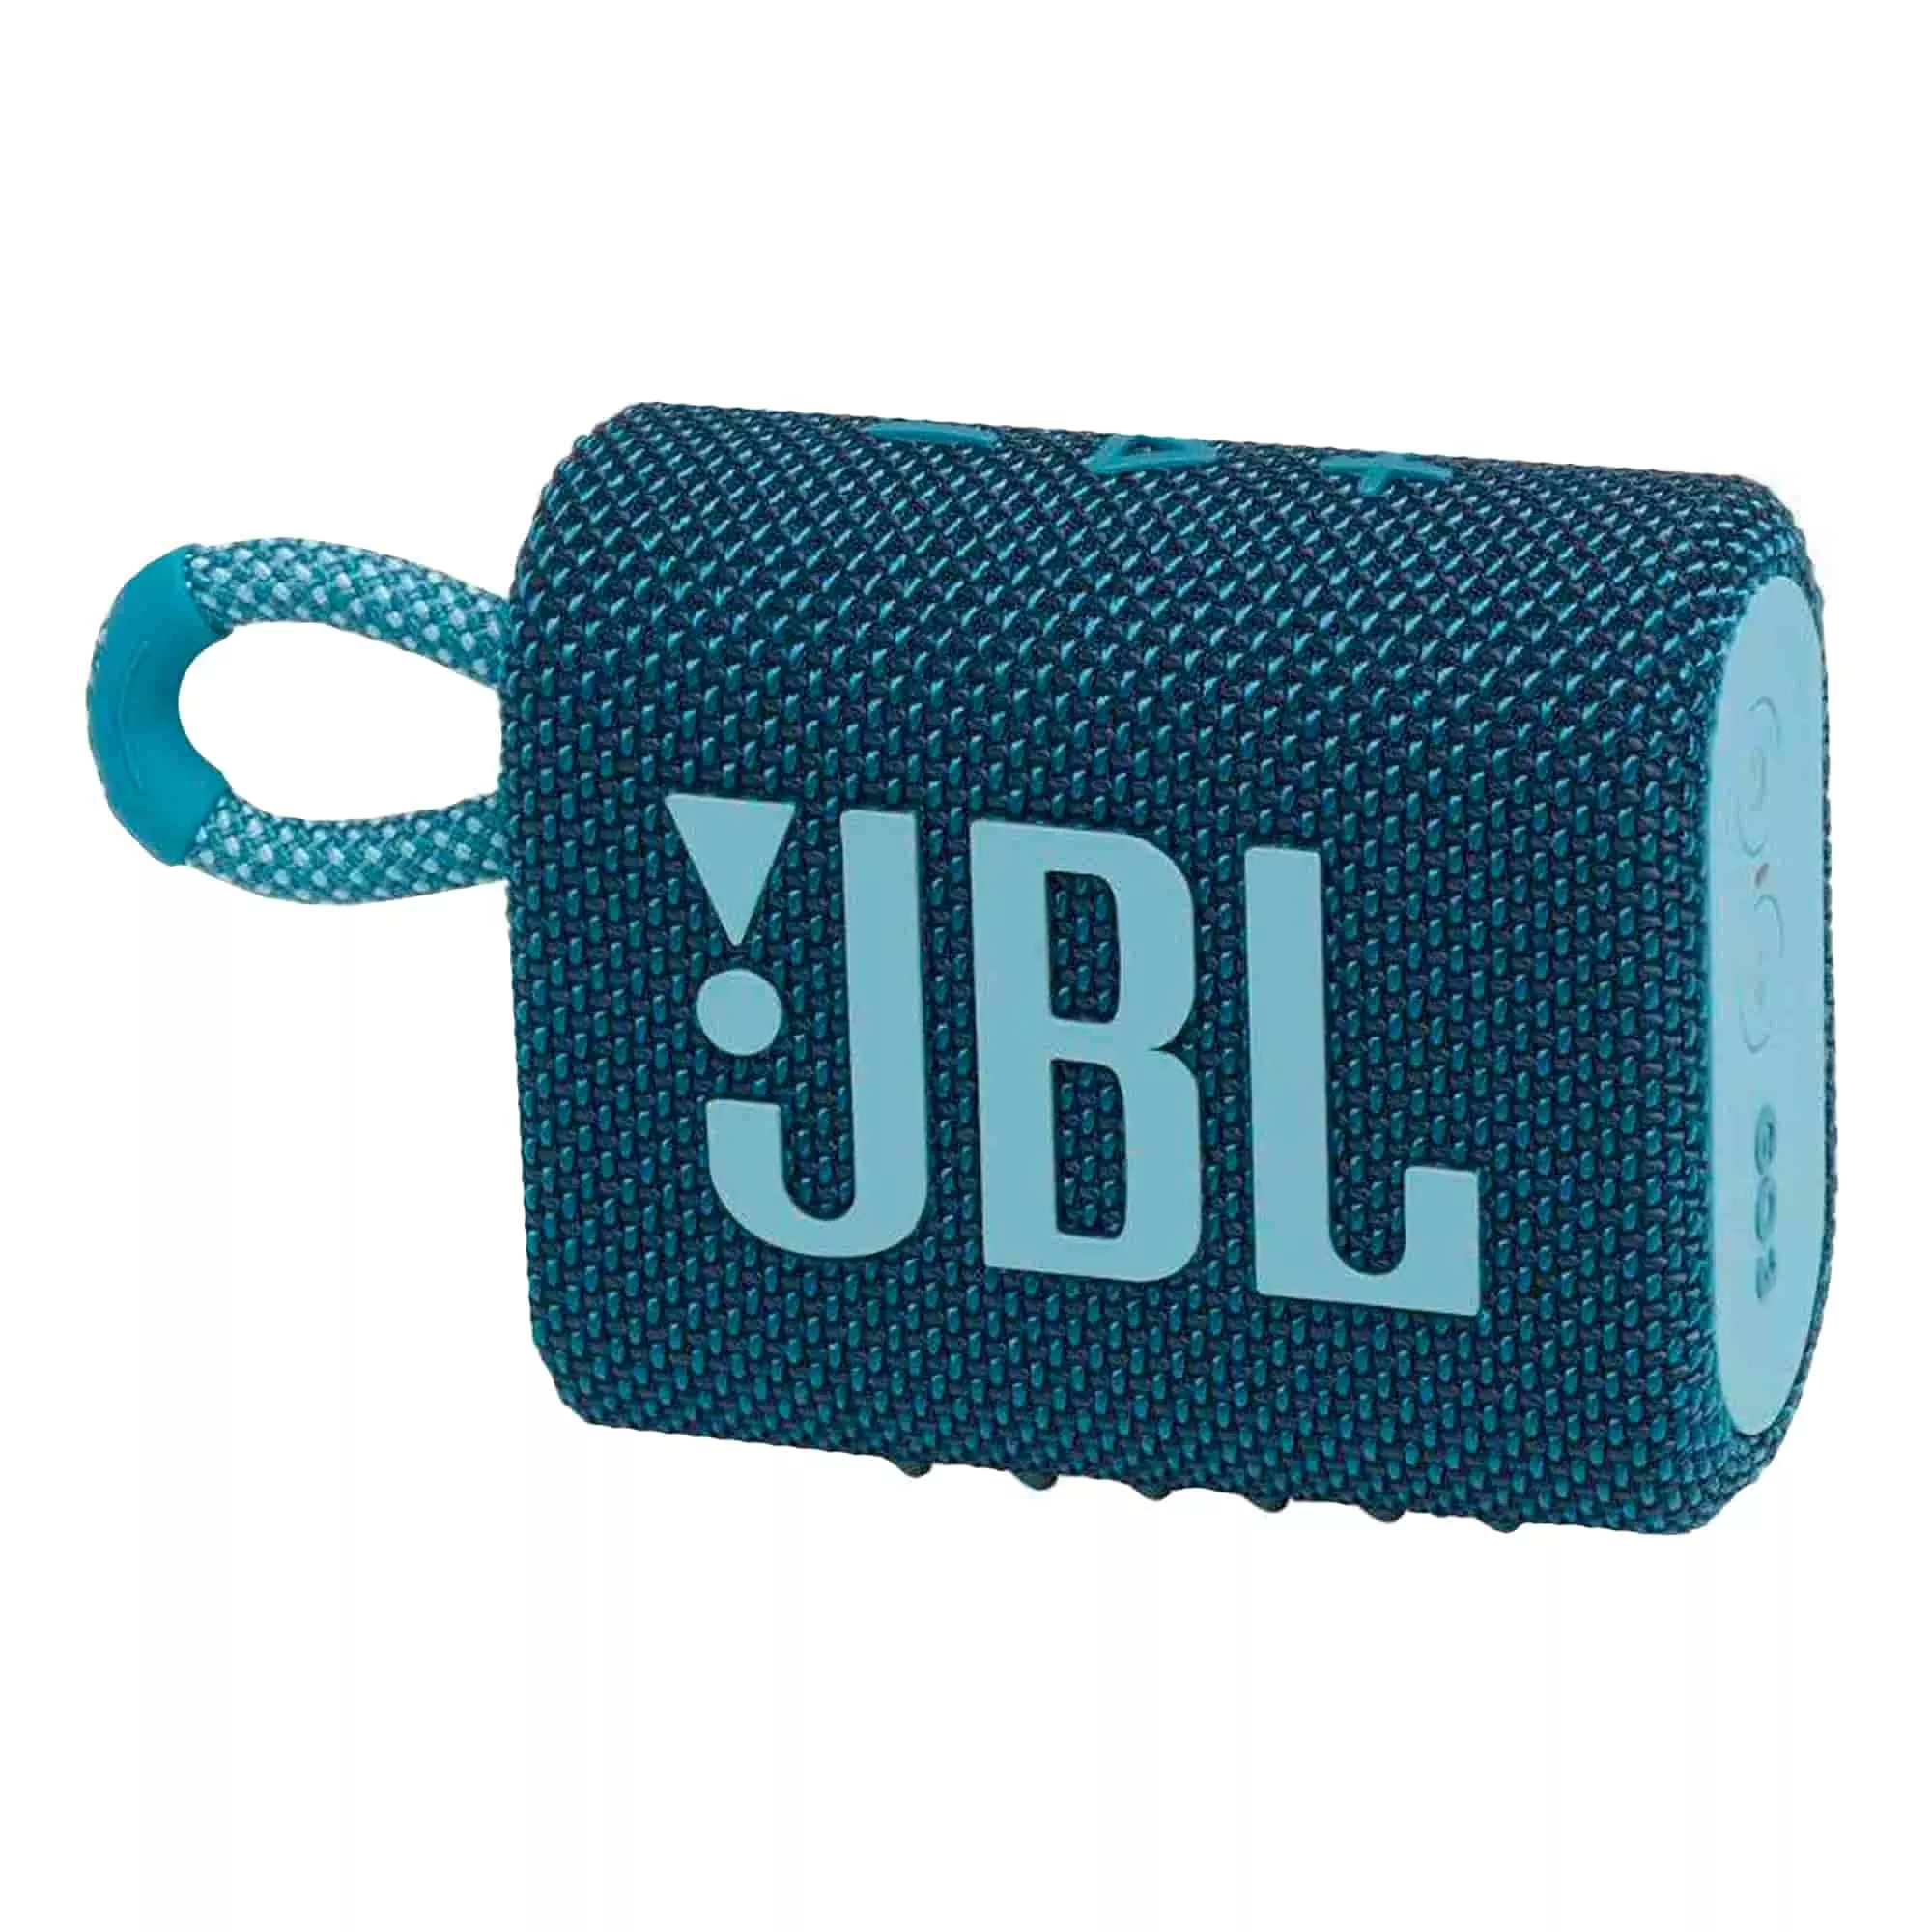 Акустическая система JBL Go 3 Eco Blue (JBLGO3ECOBLU)